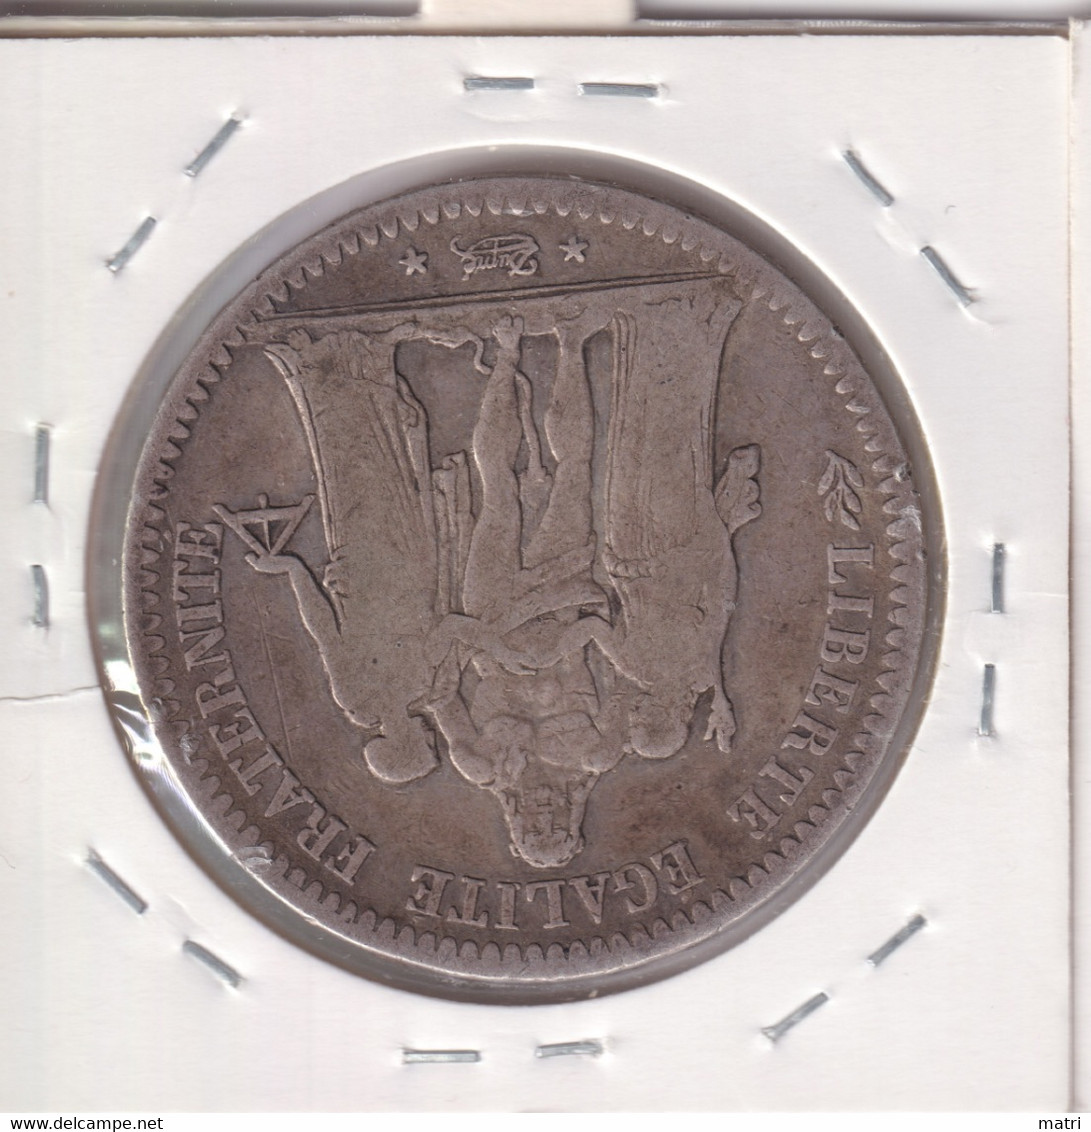 France 5 Francs 1849 Km#756 - 5 Francs